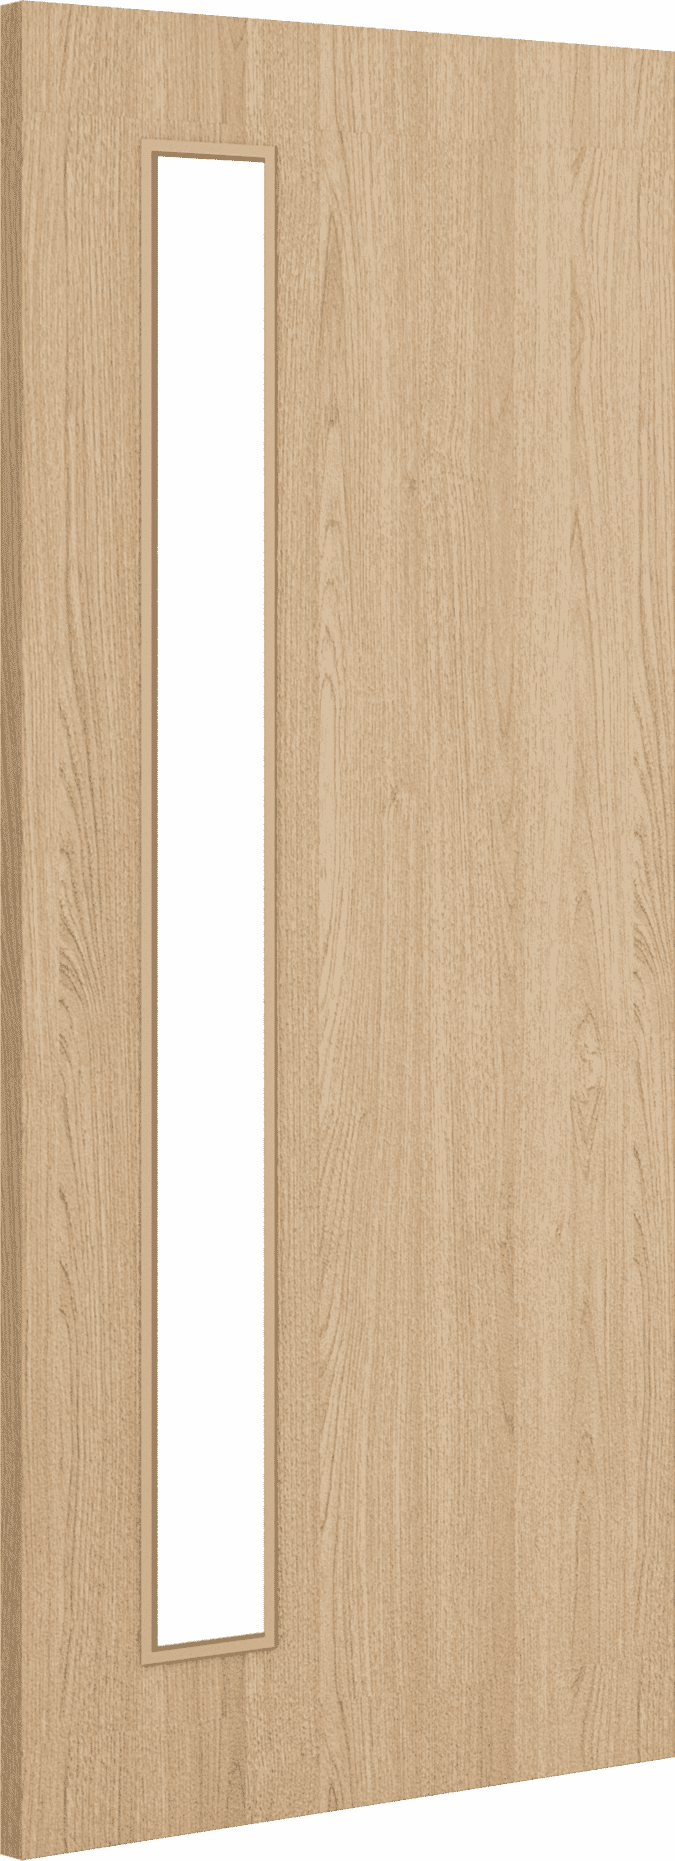 2040mm x 926mm x 44mm Architectural Oak 06 Clear Glazed - Prefinished FD30 Fire Door Blank